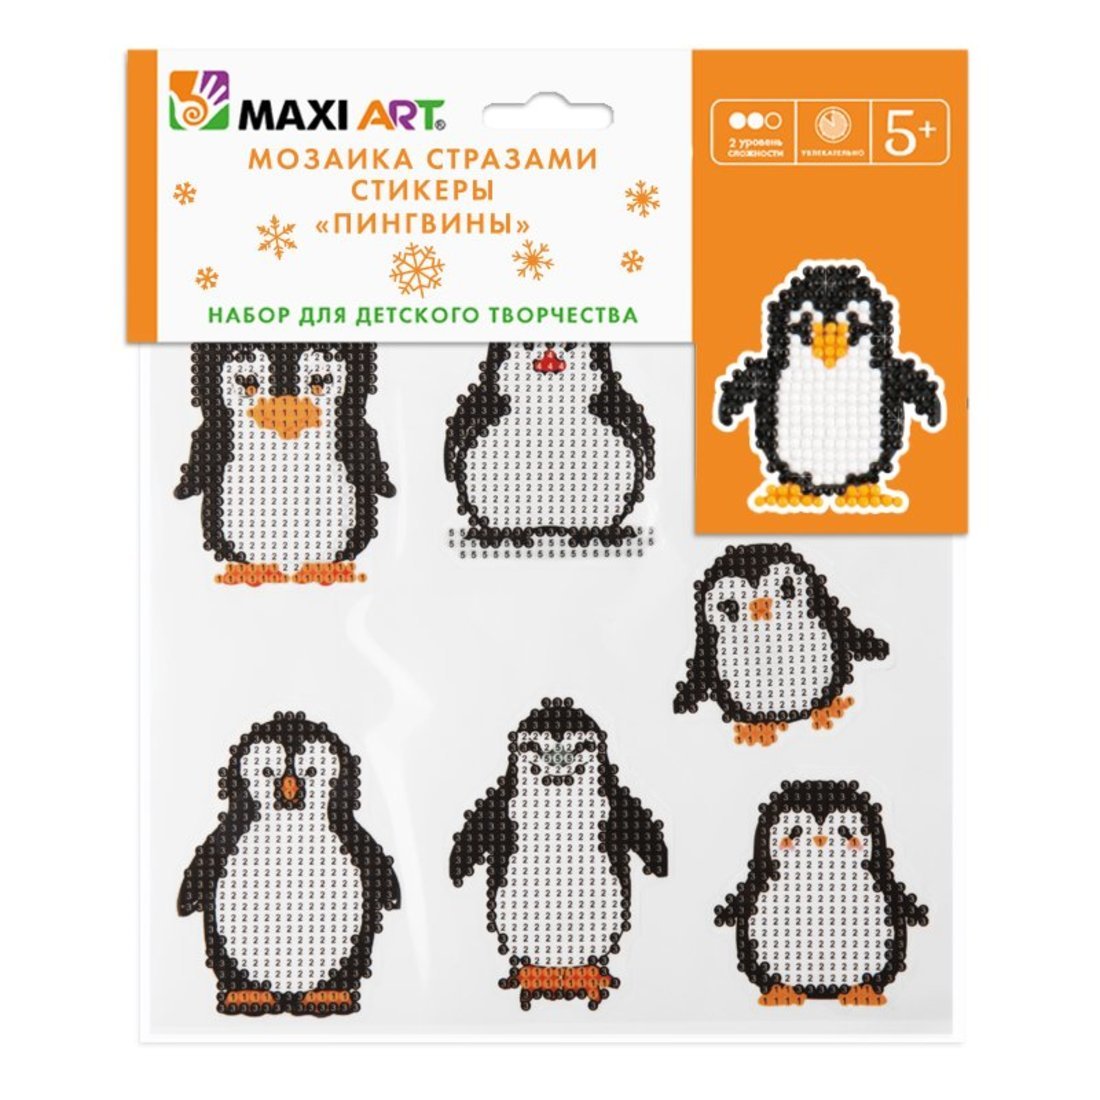 Мозаика стразами Maxi Art набор из  7 стикеров со стразами Пингвины 20х20 см